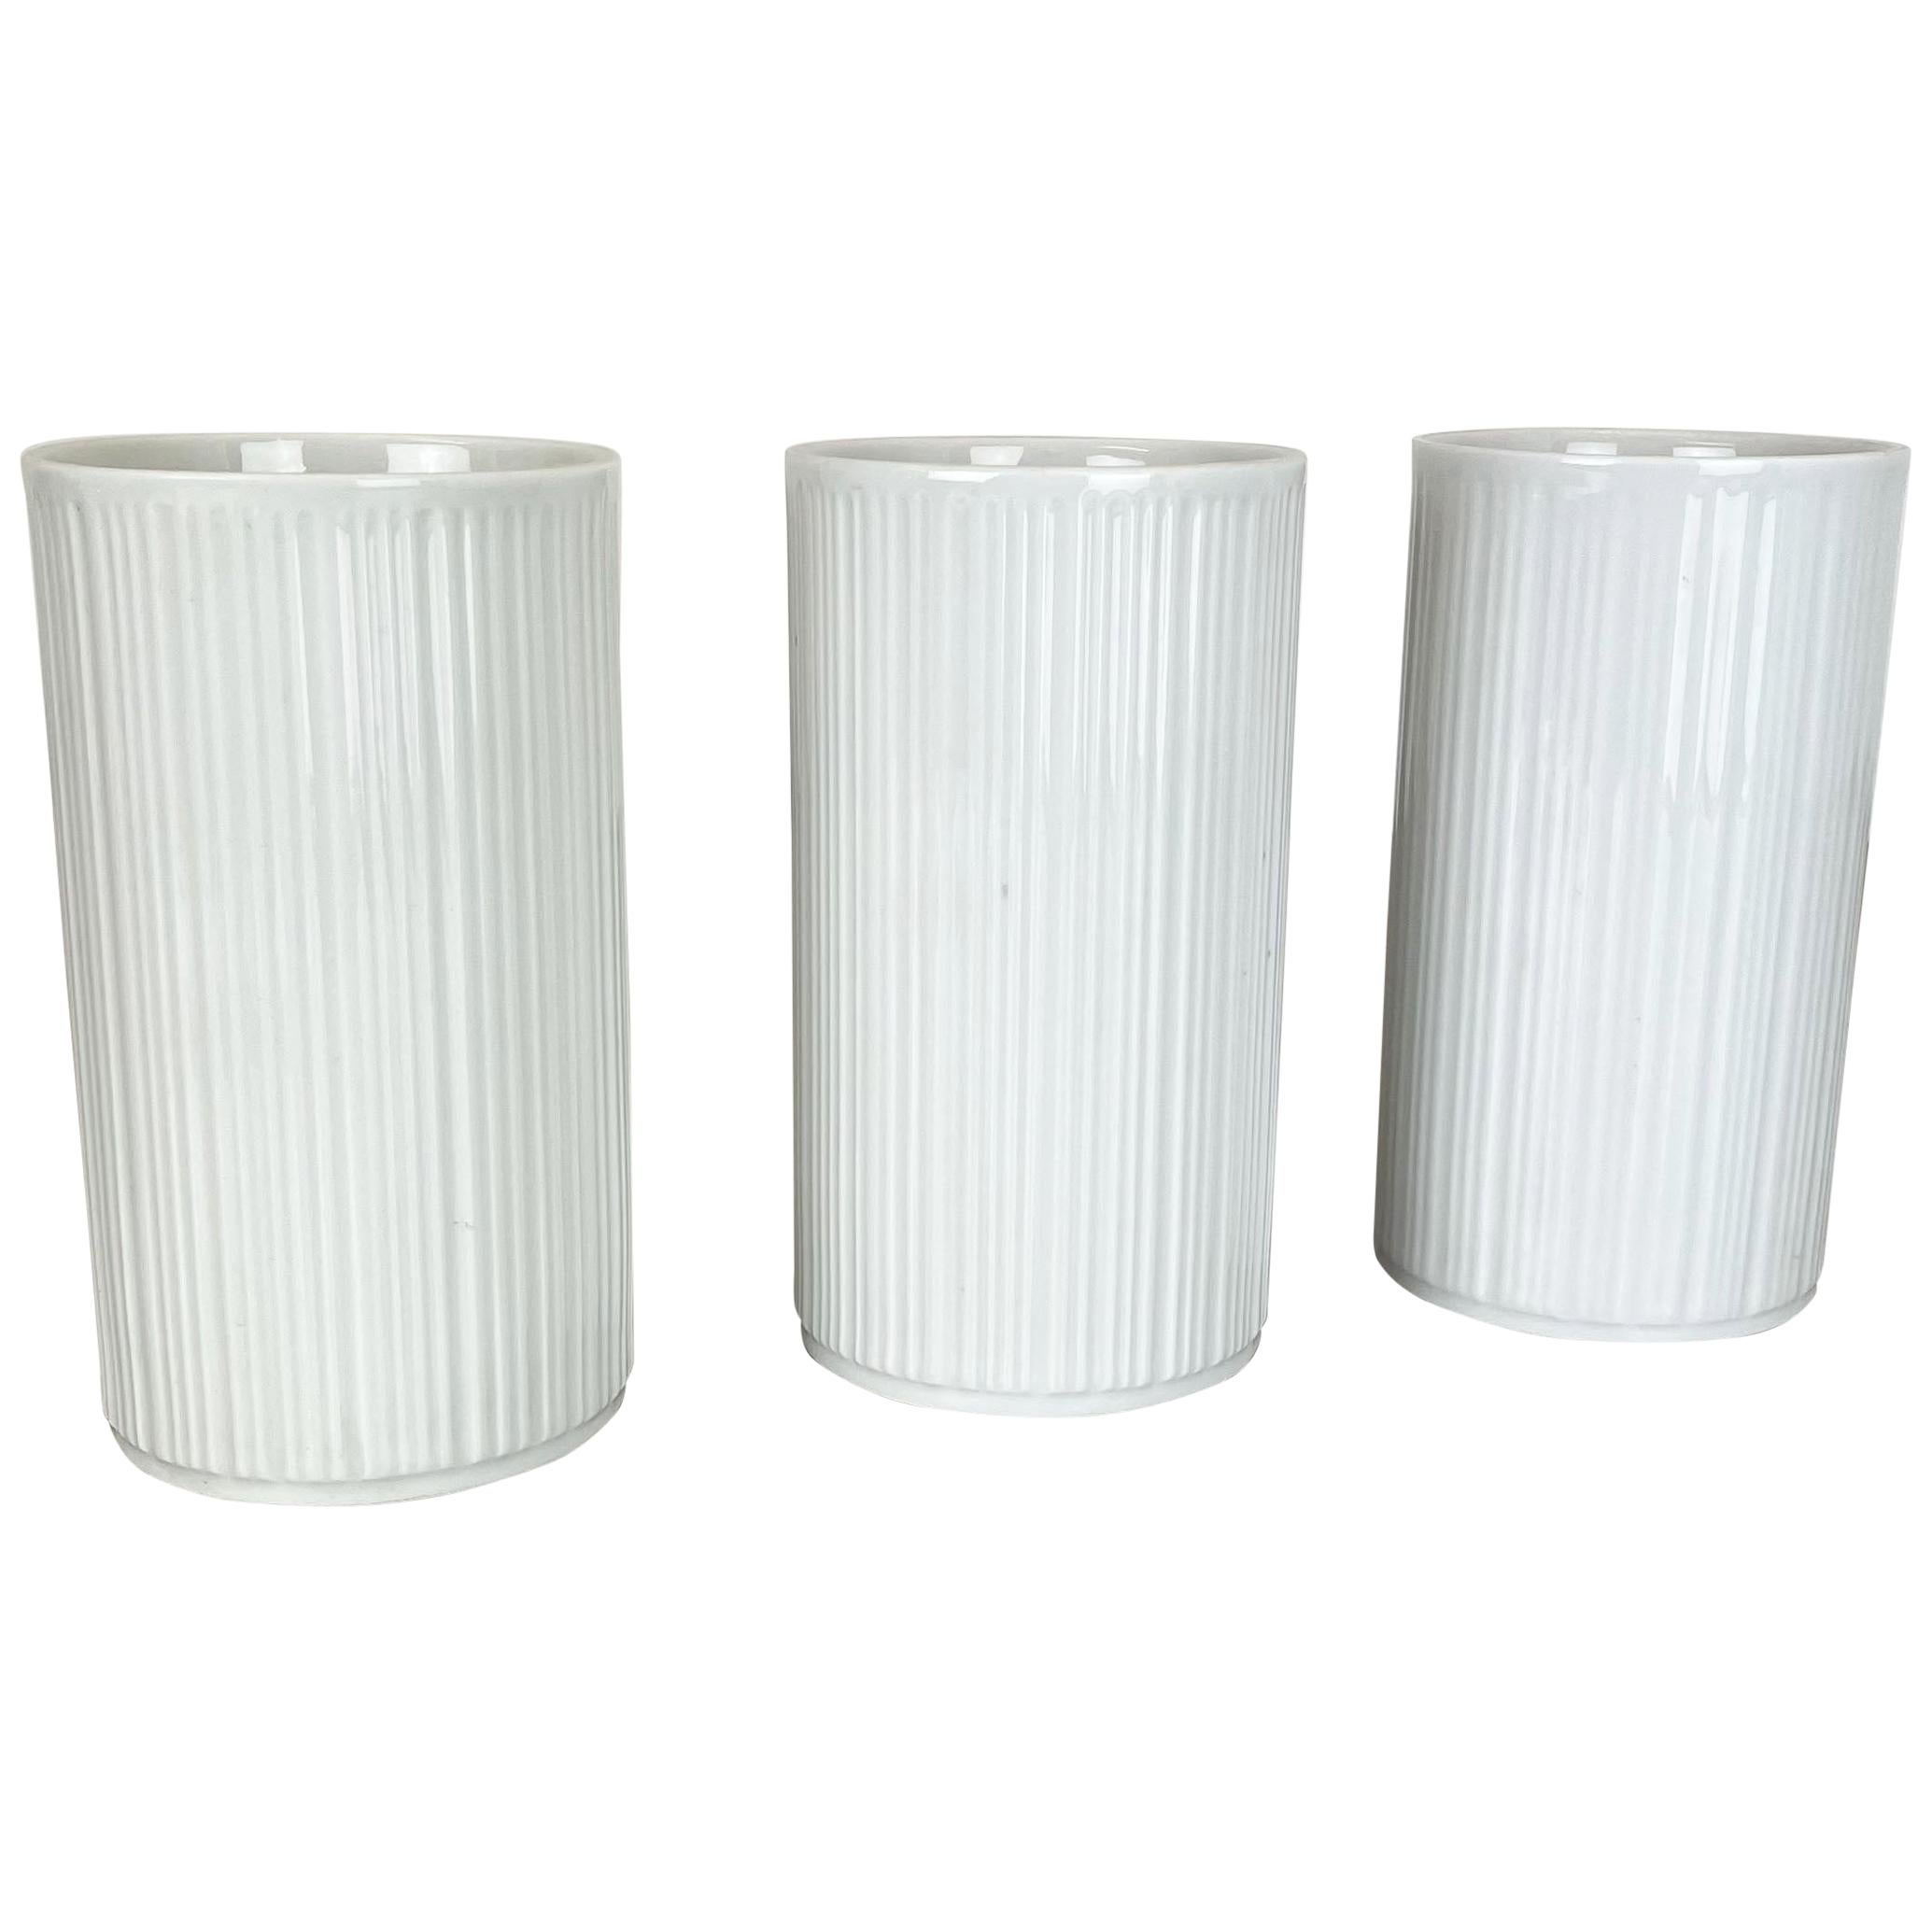 Set of 3 OP Art Porcelain Vases by Melitta Minden, Germany, 1970s For Sale